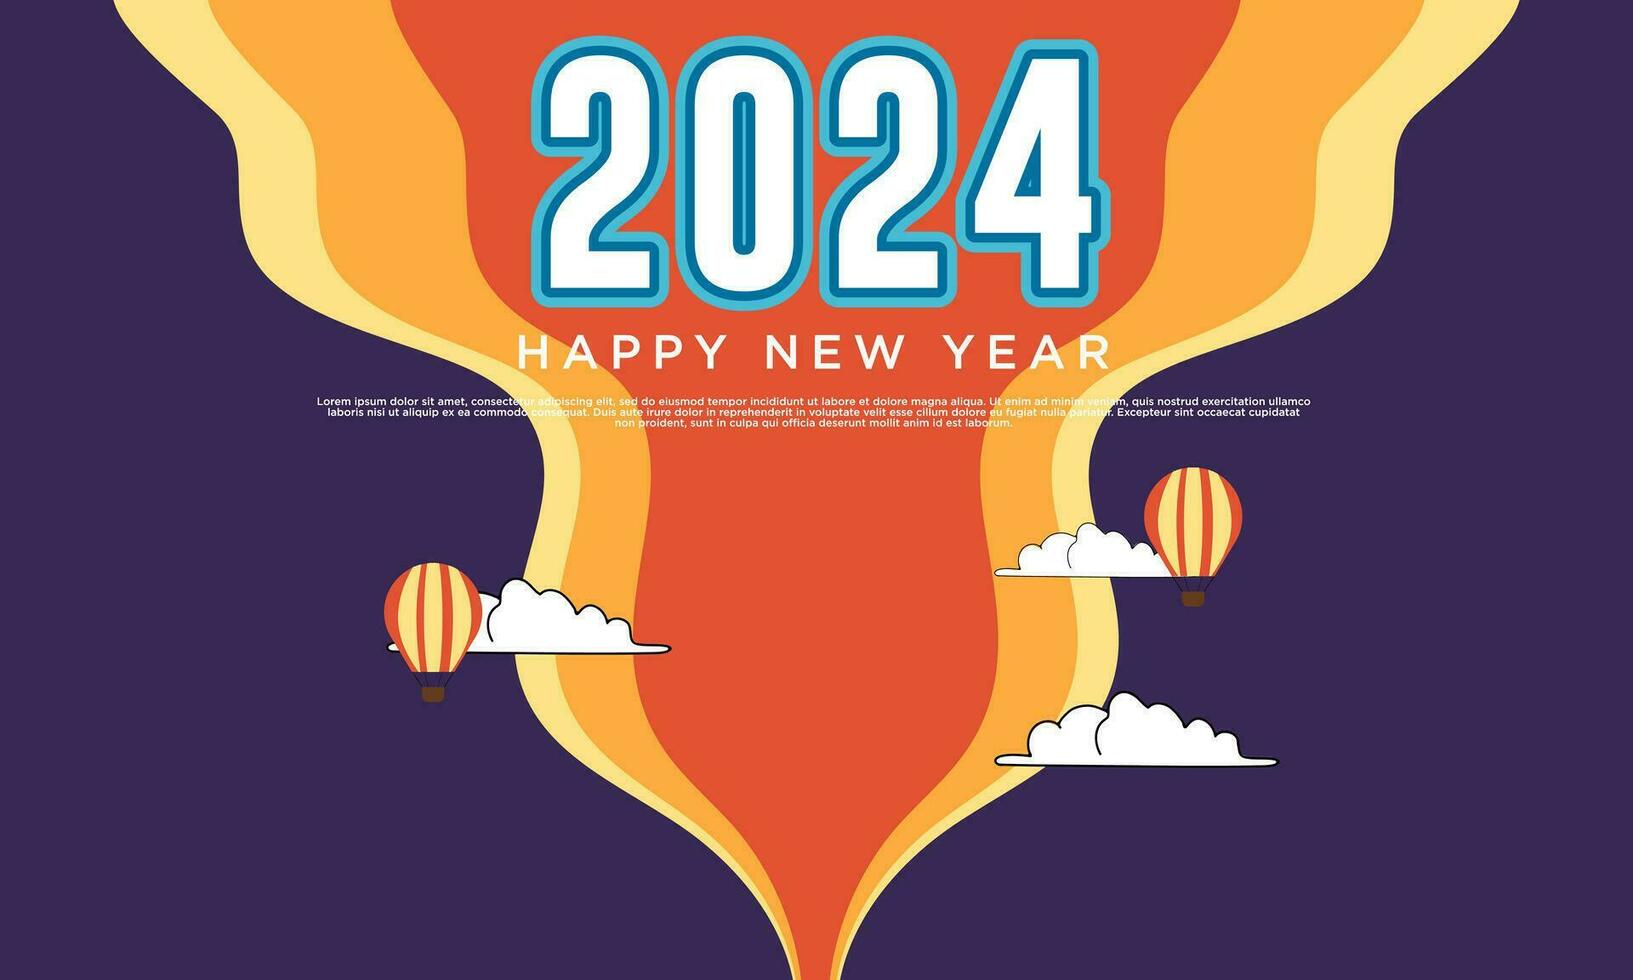 contento nuevo año 2024 bandera logo diseño ilustración, creativo y vistoso nuevo año 2024 vector